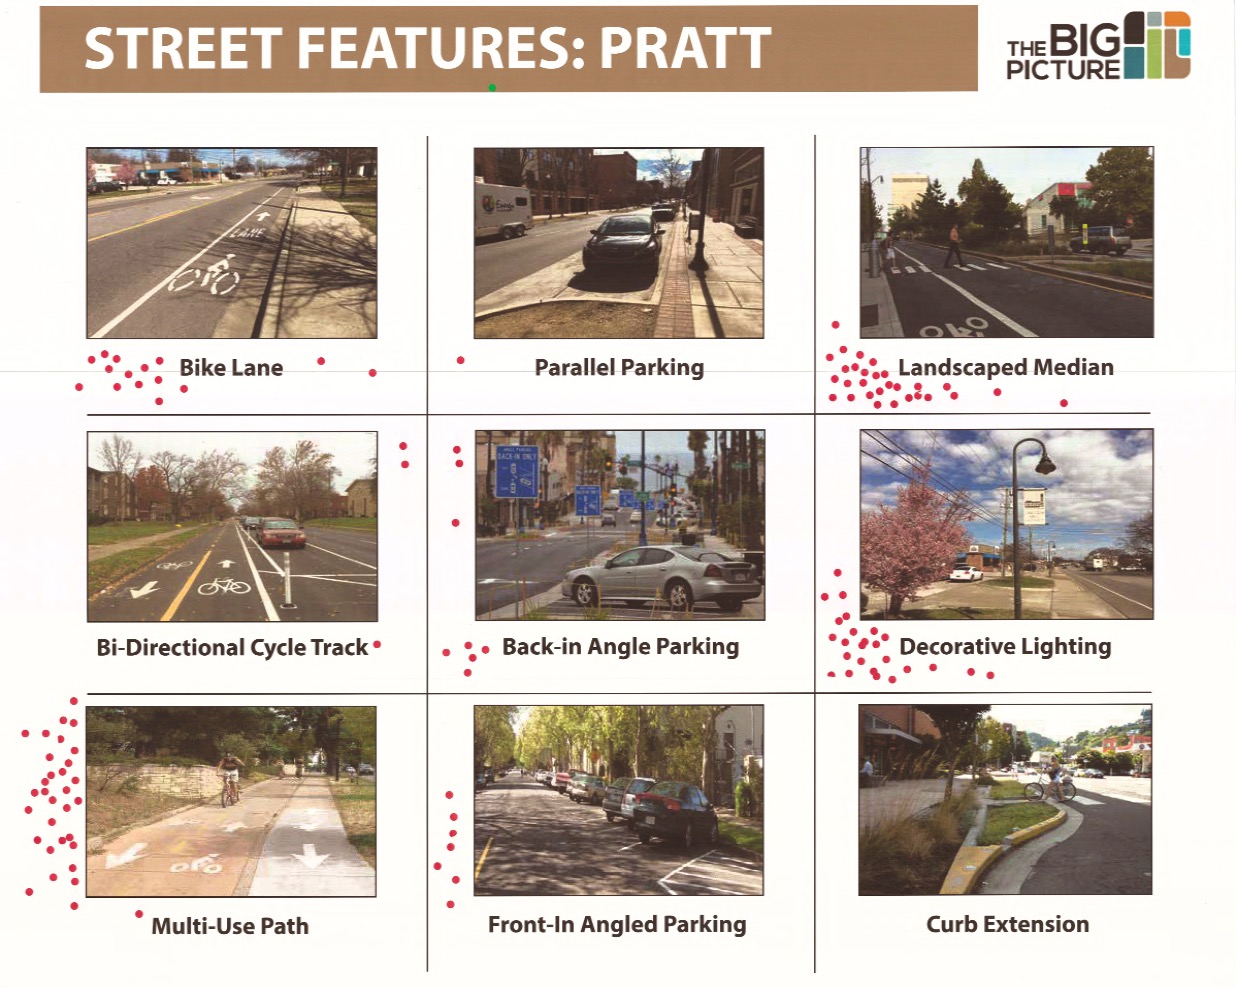 Street Features: Pratt